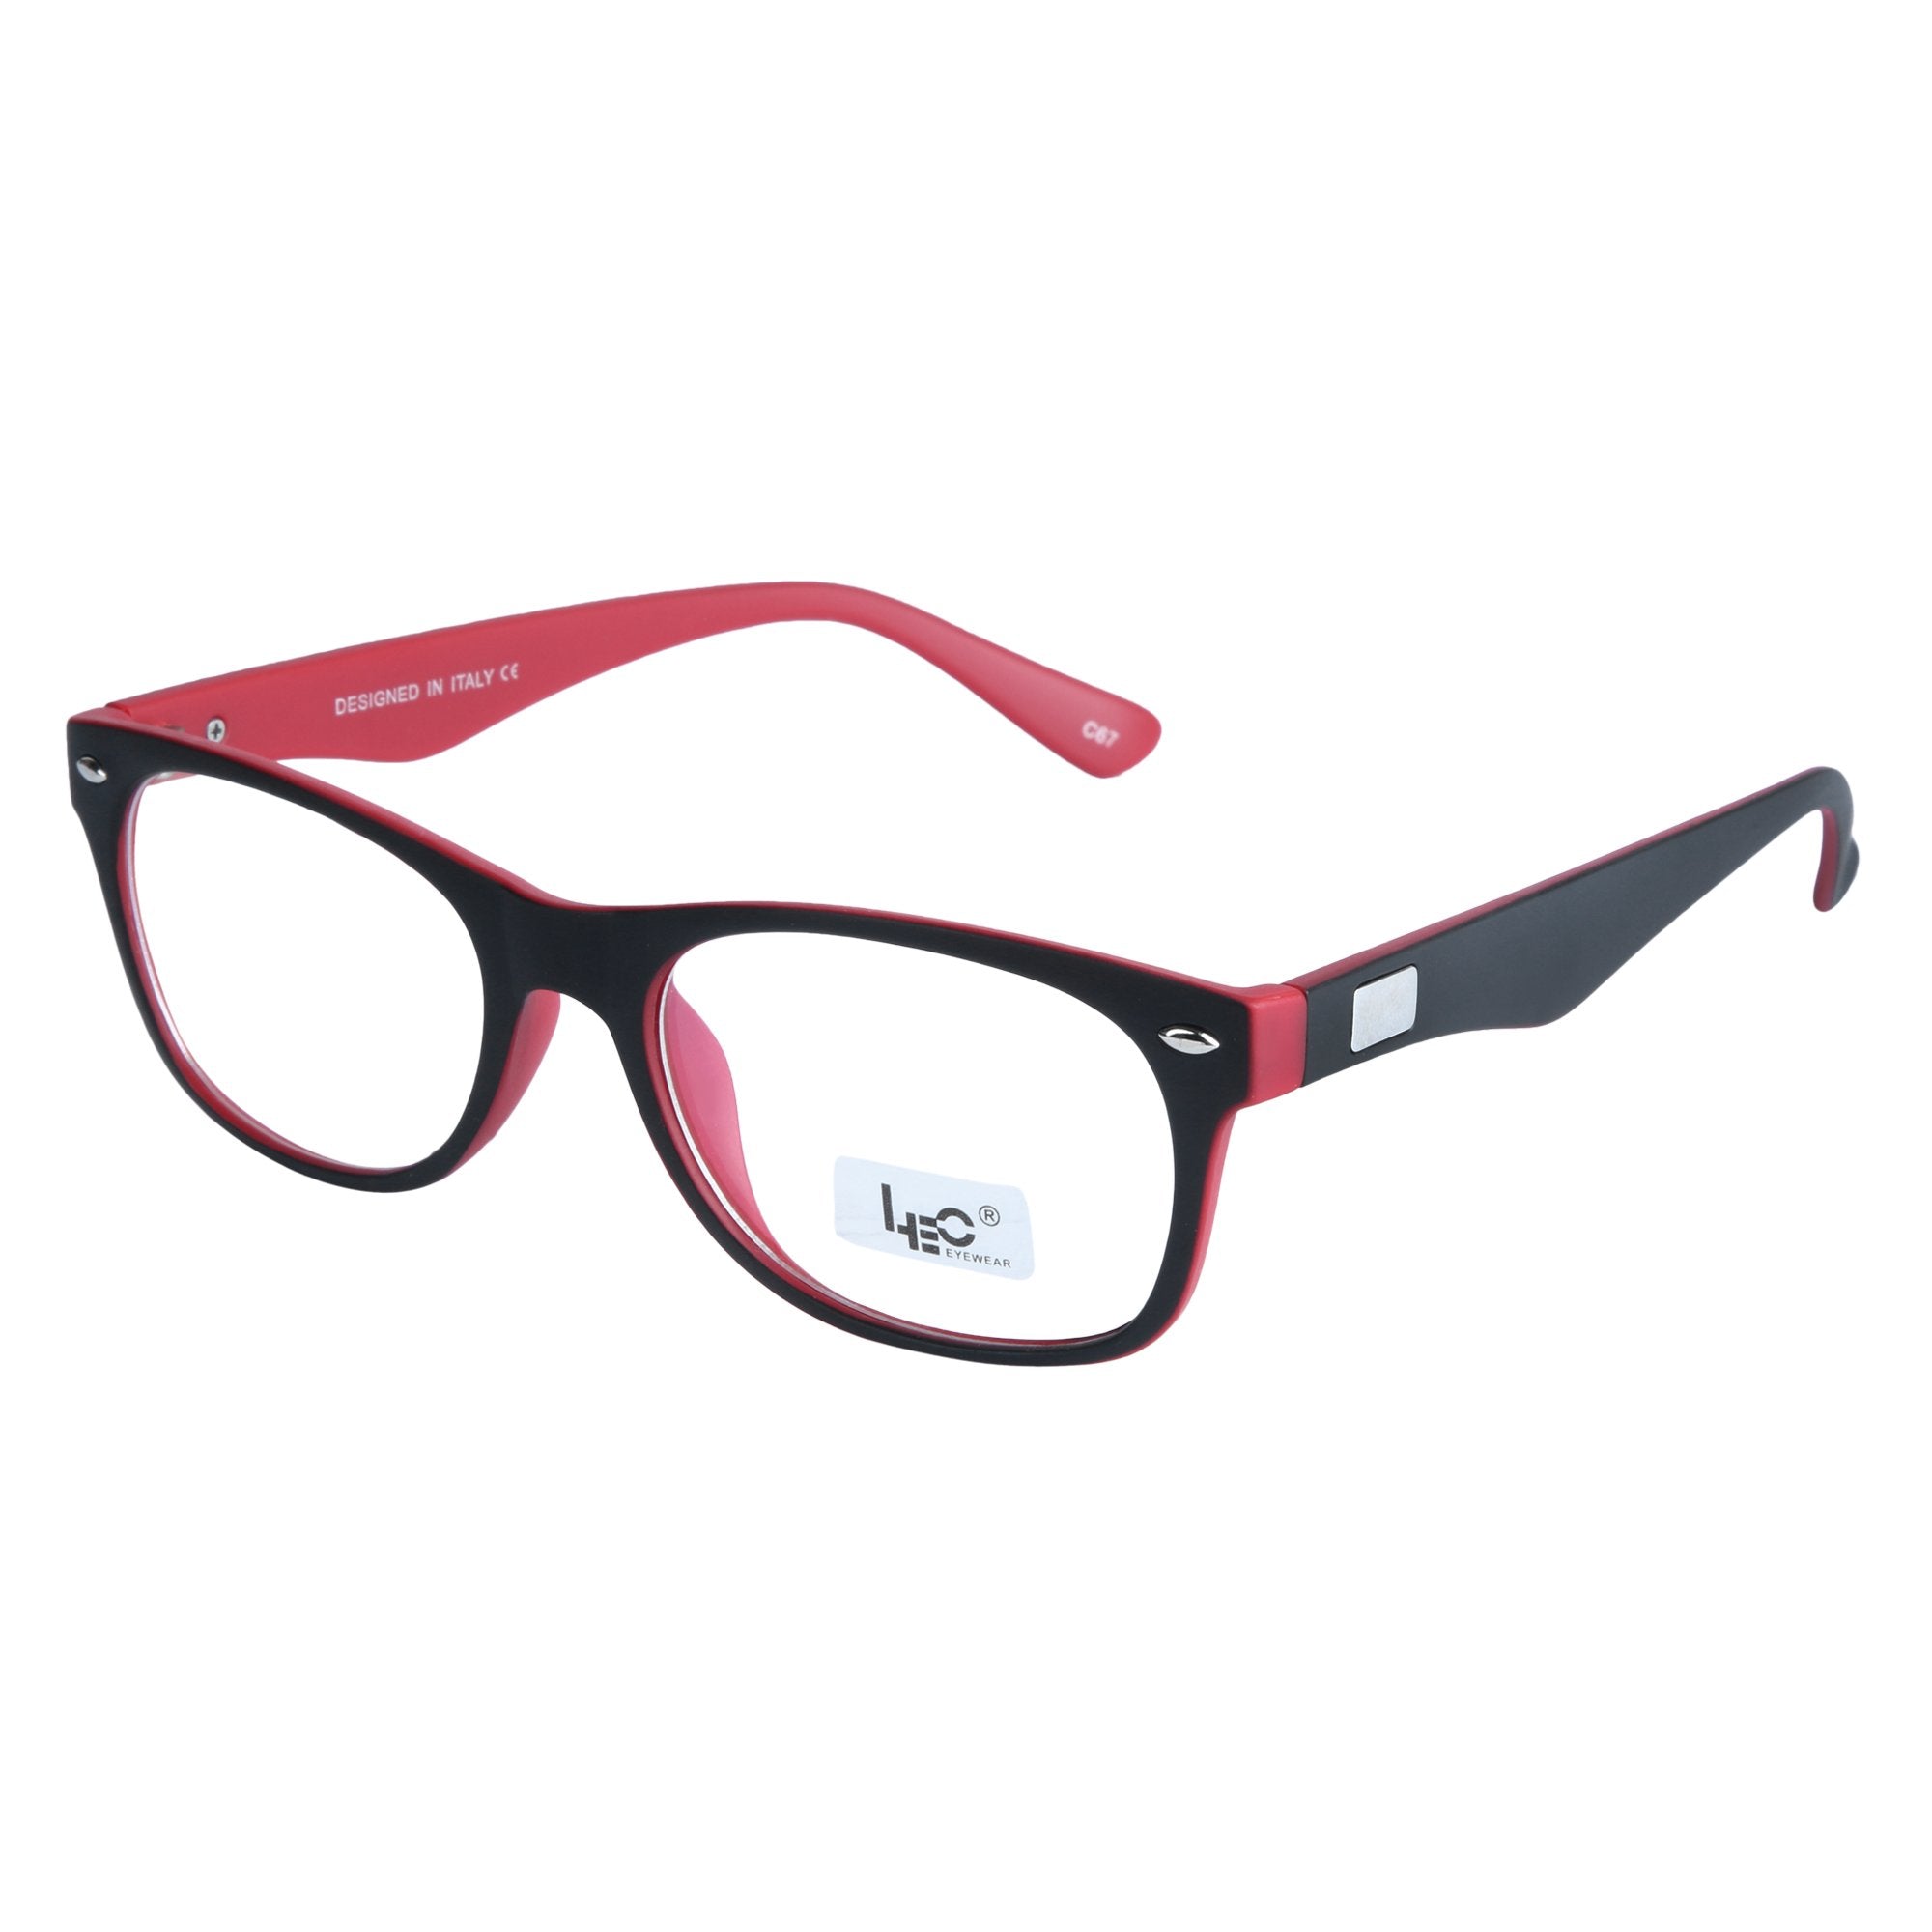 Black & Red Wayfarer Rimmed Eyeglasses - L3108-C67